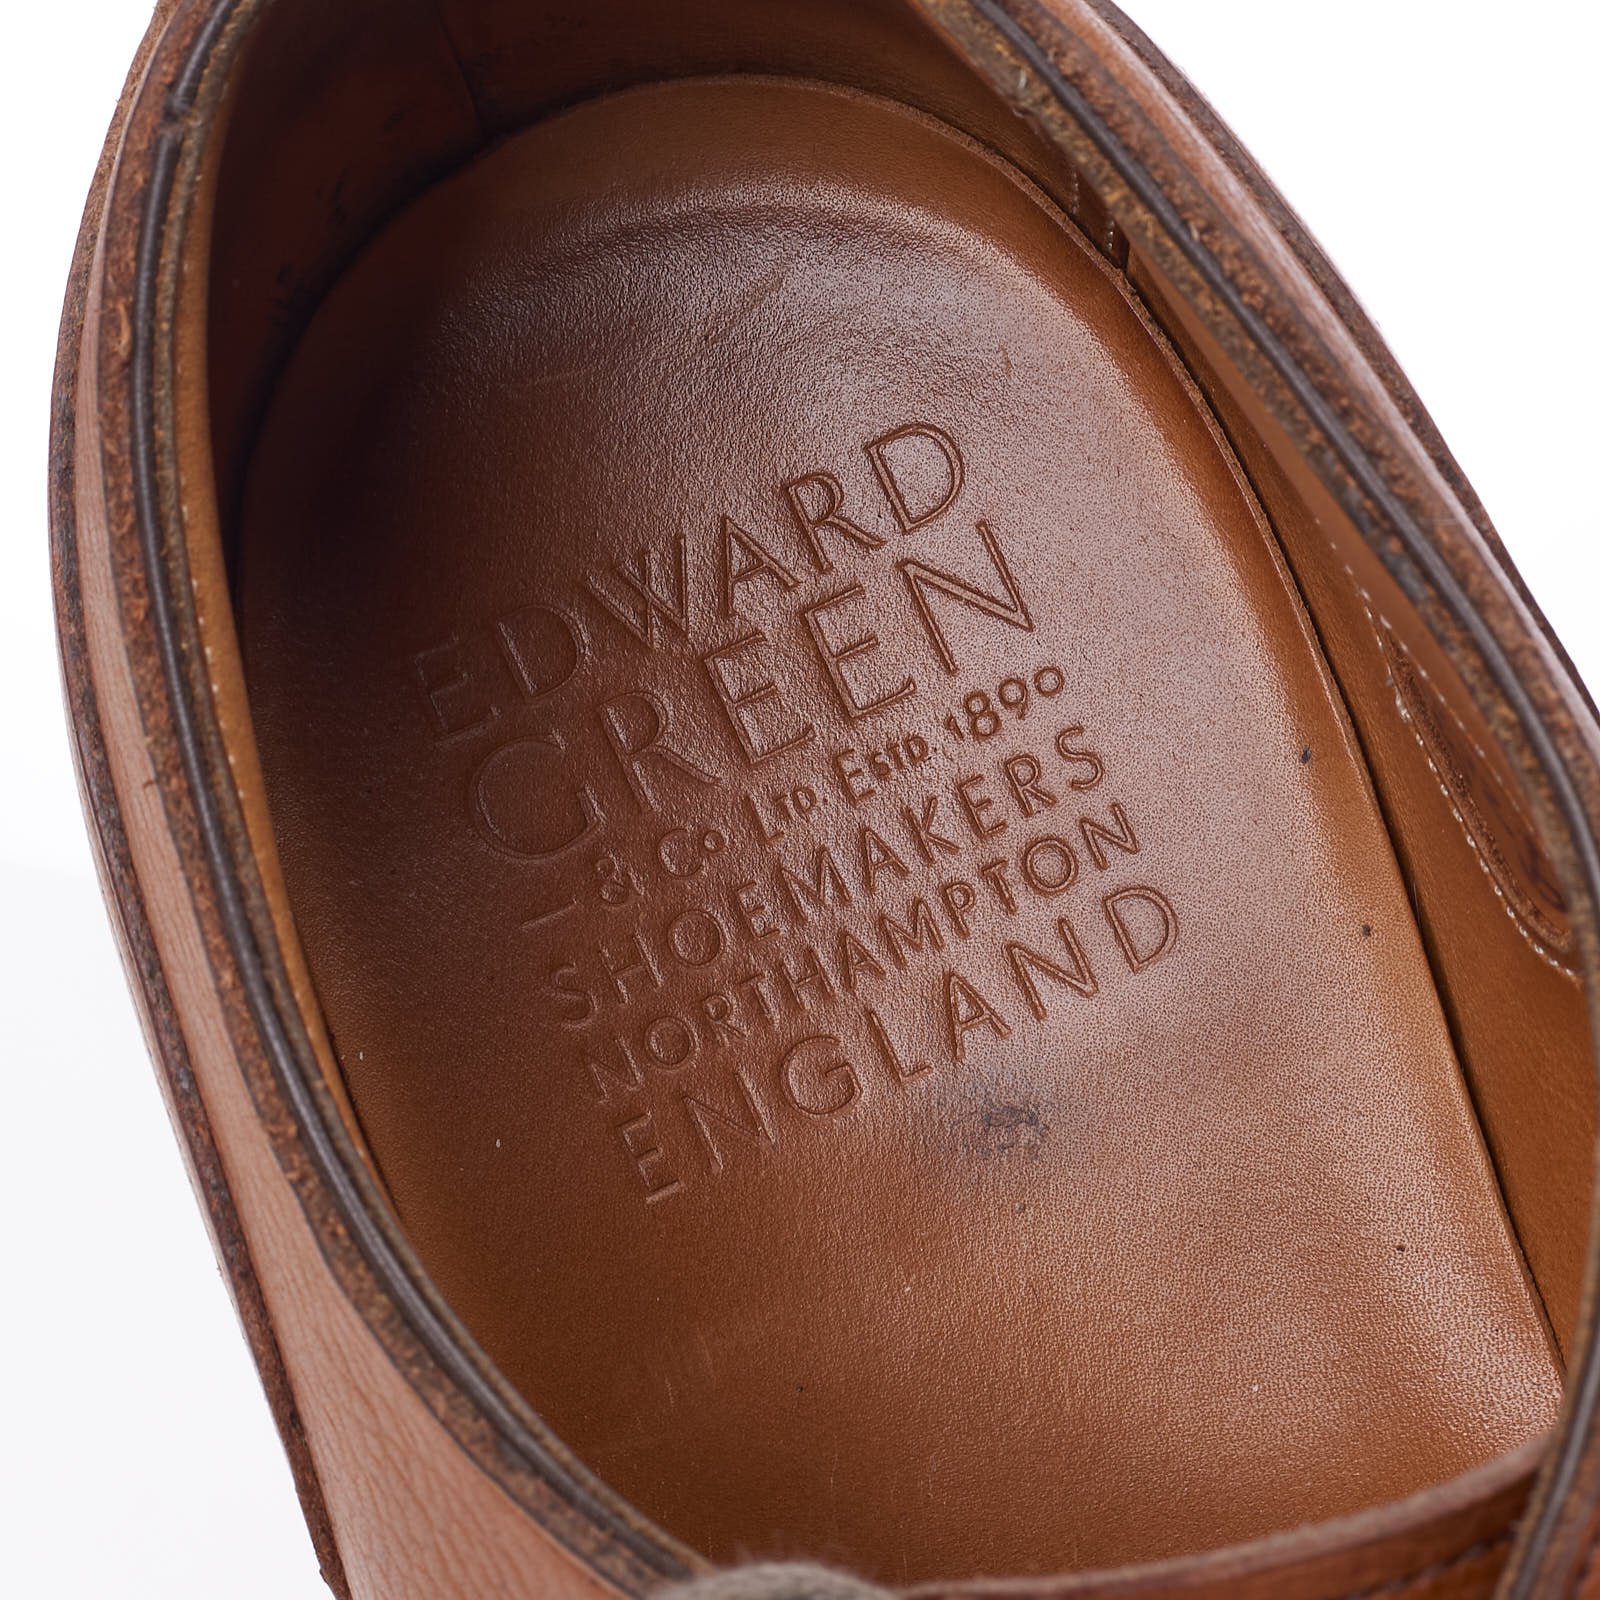 EDWARD GREEN Dover 202 Last Chestnut Utah Derby Shoes 8.5 US 9